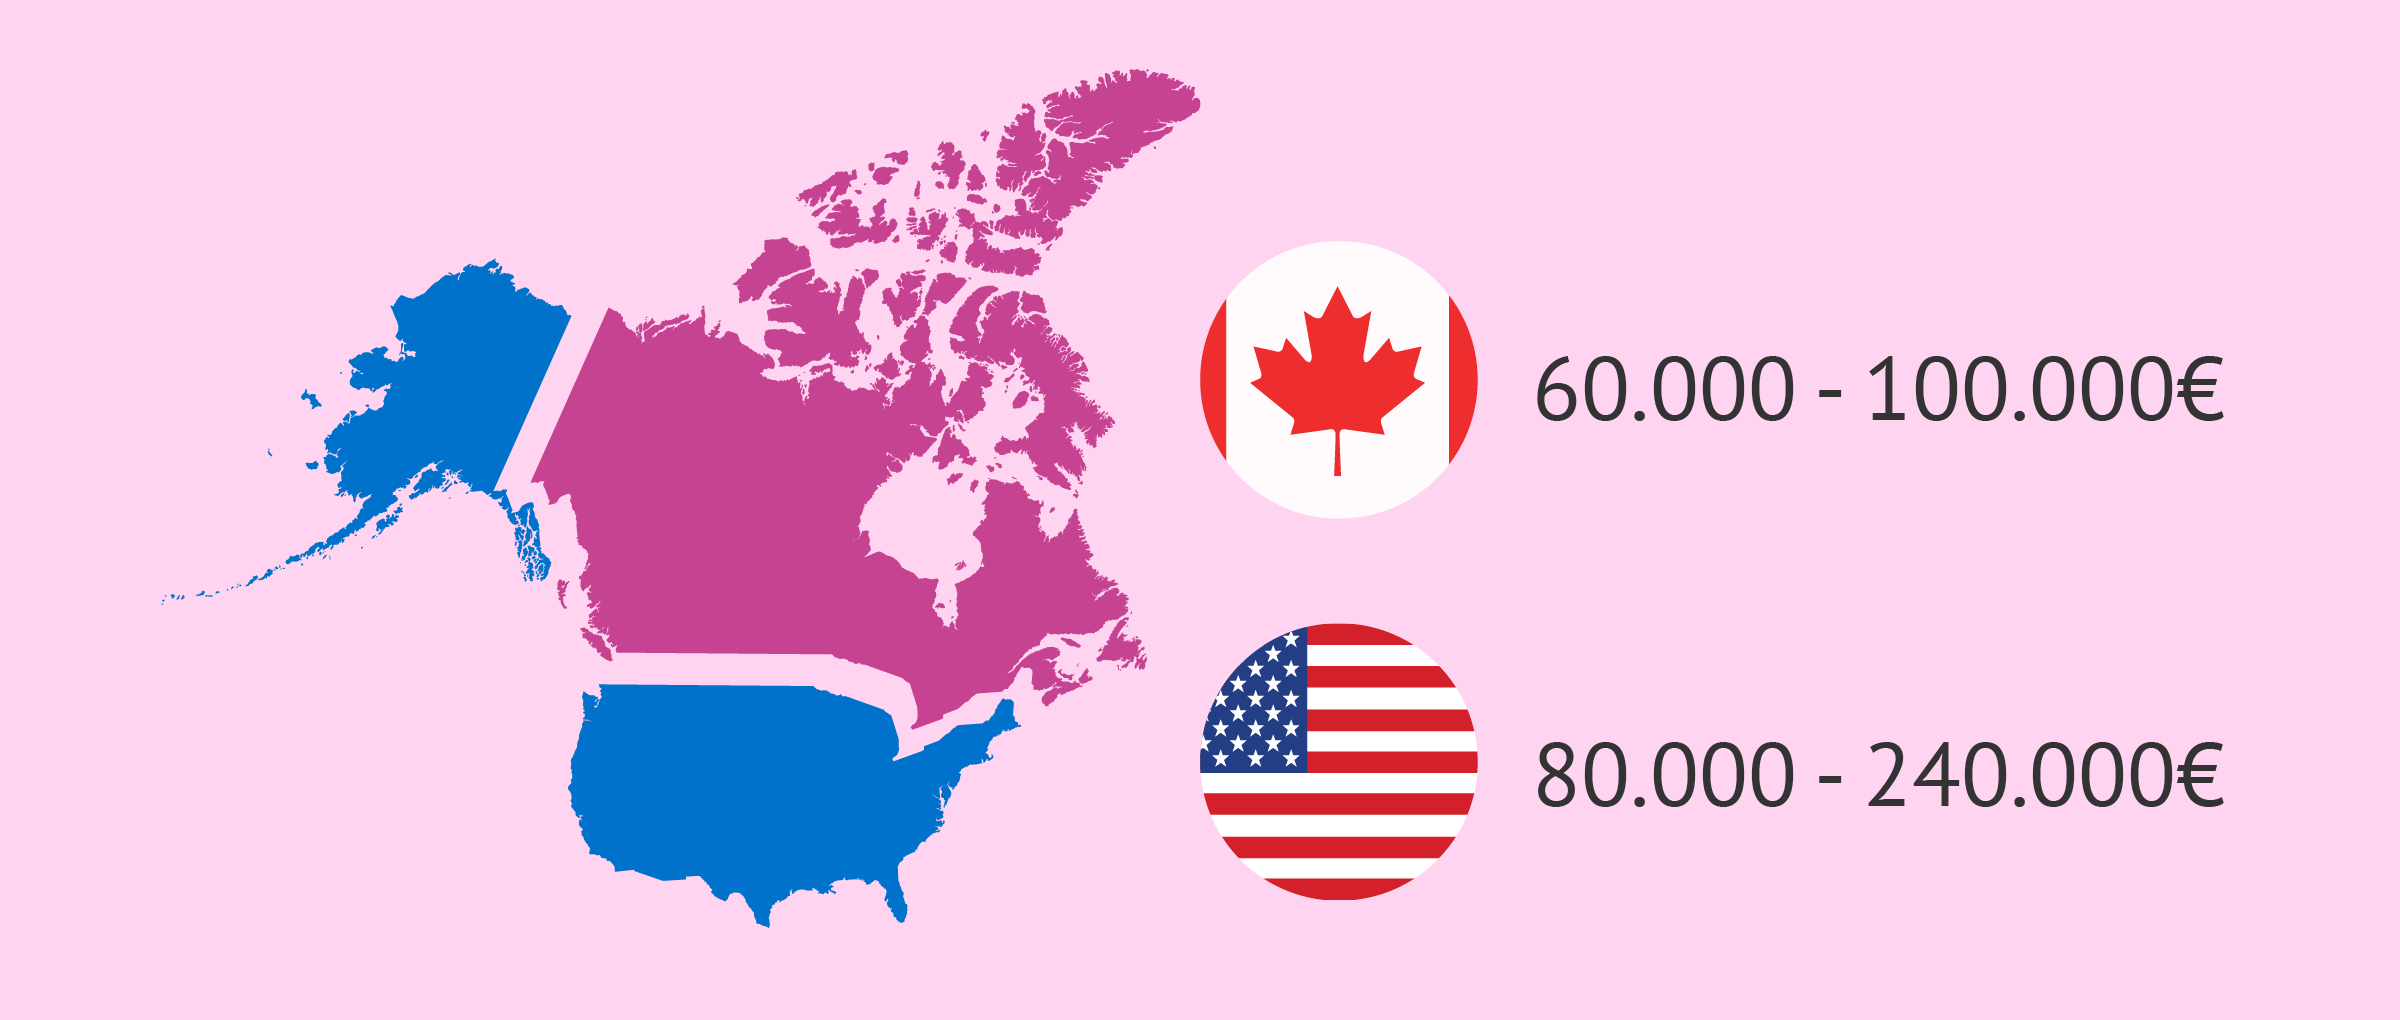 EEUU y Canadá, destinos de gestación subrogada